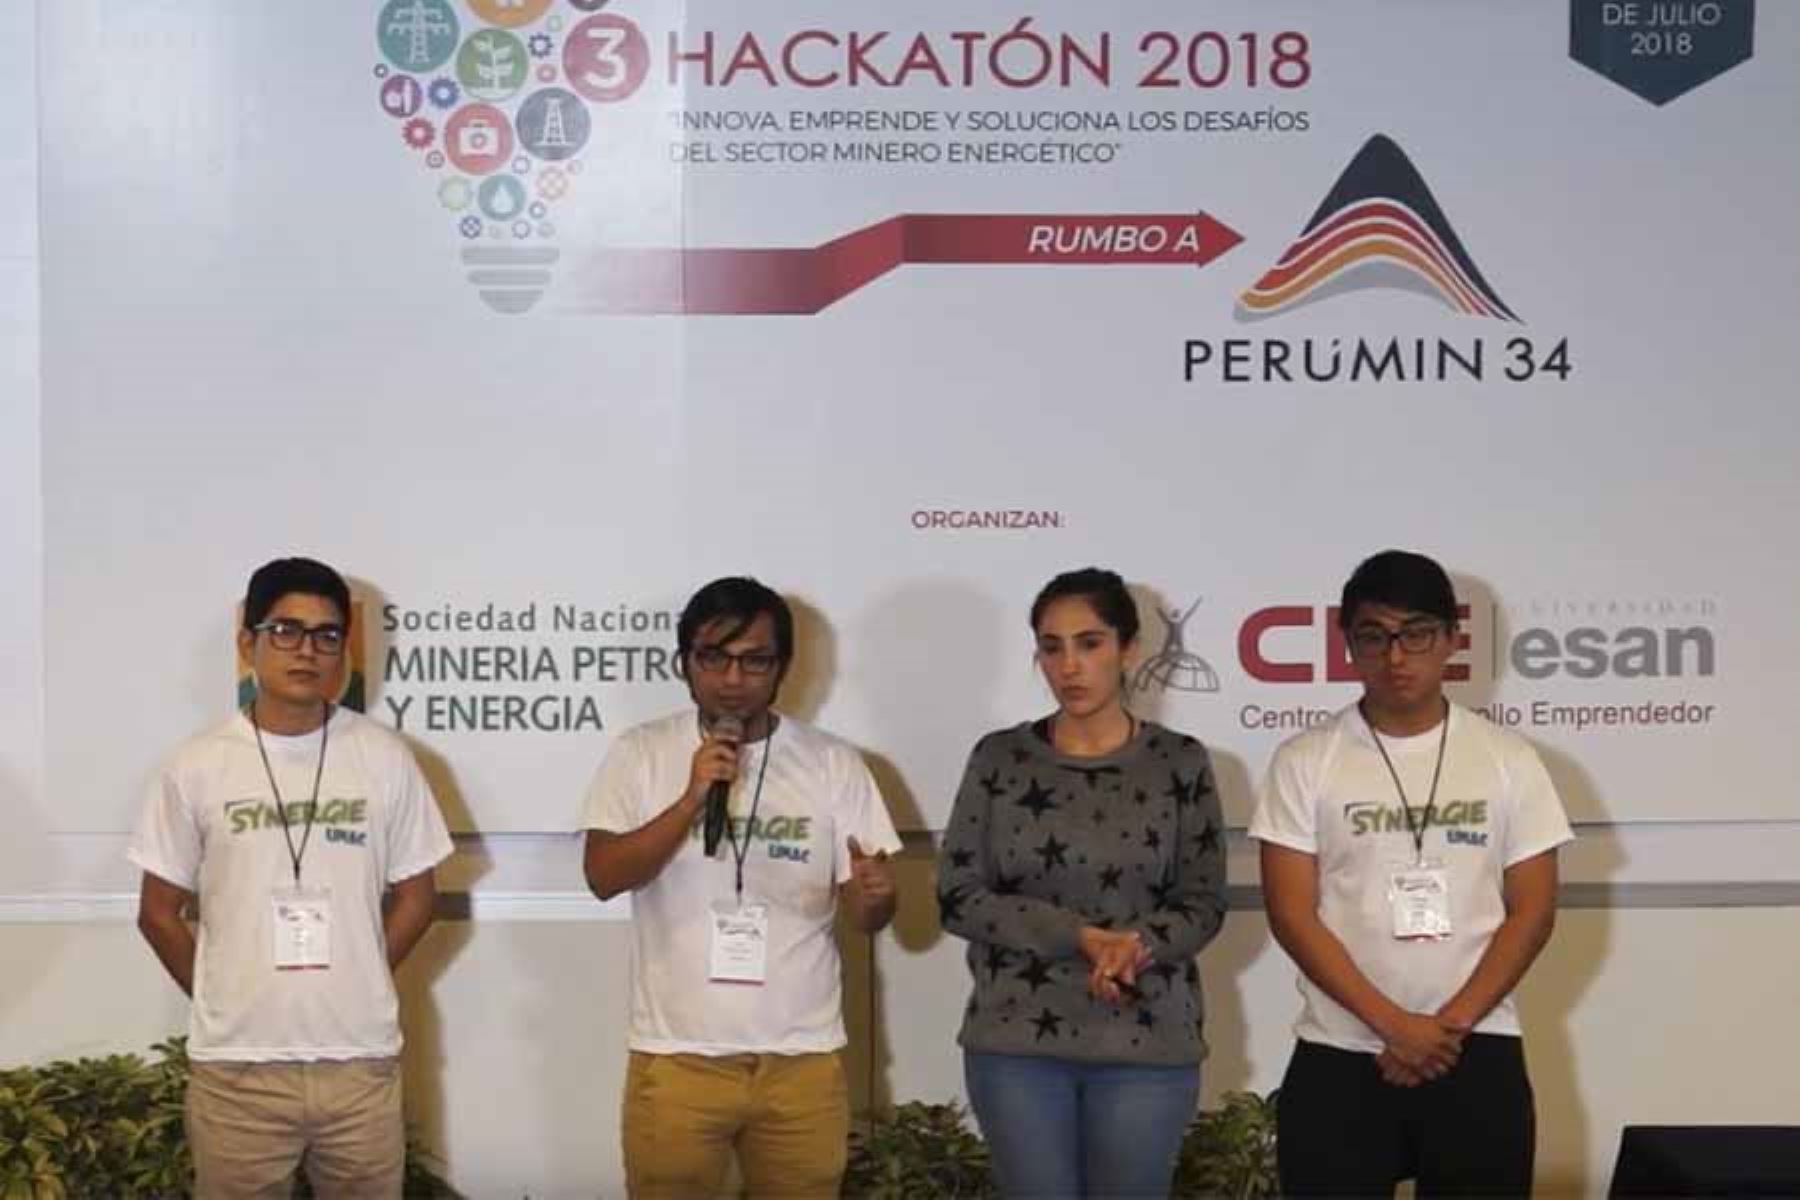 Luigi Bravo, Fernando Alata, Roberto Muños y Nataly Feijoo son los ganadores de la hackatón Rumbo al Perumin.